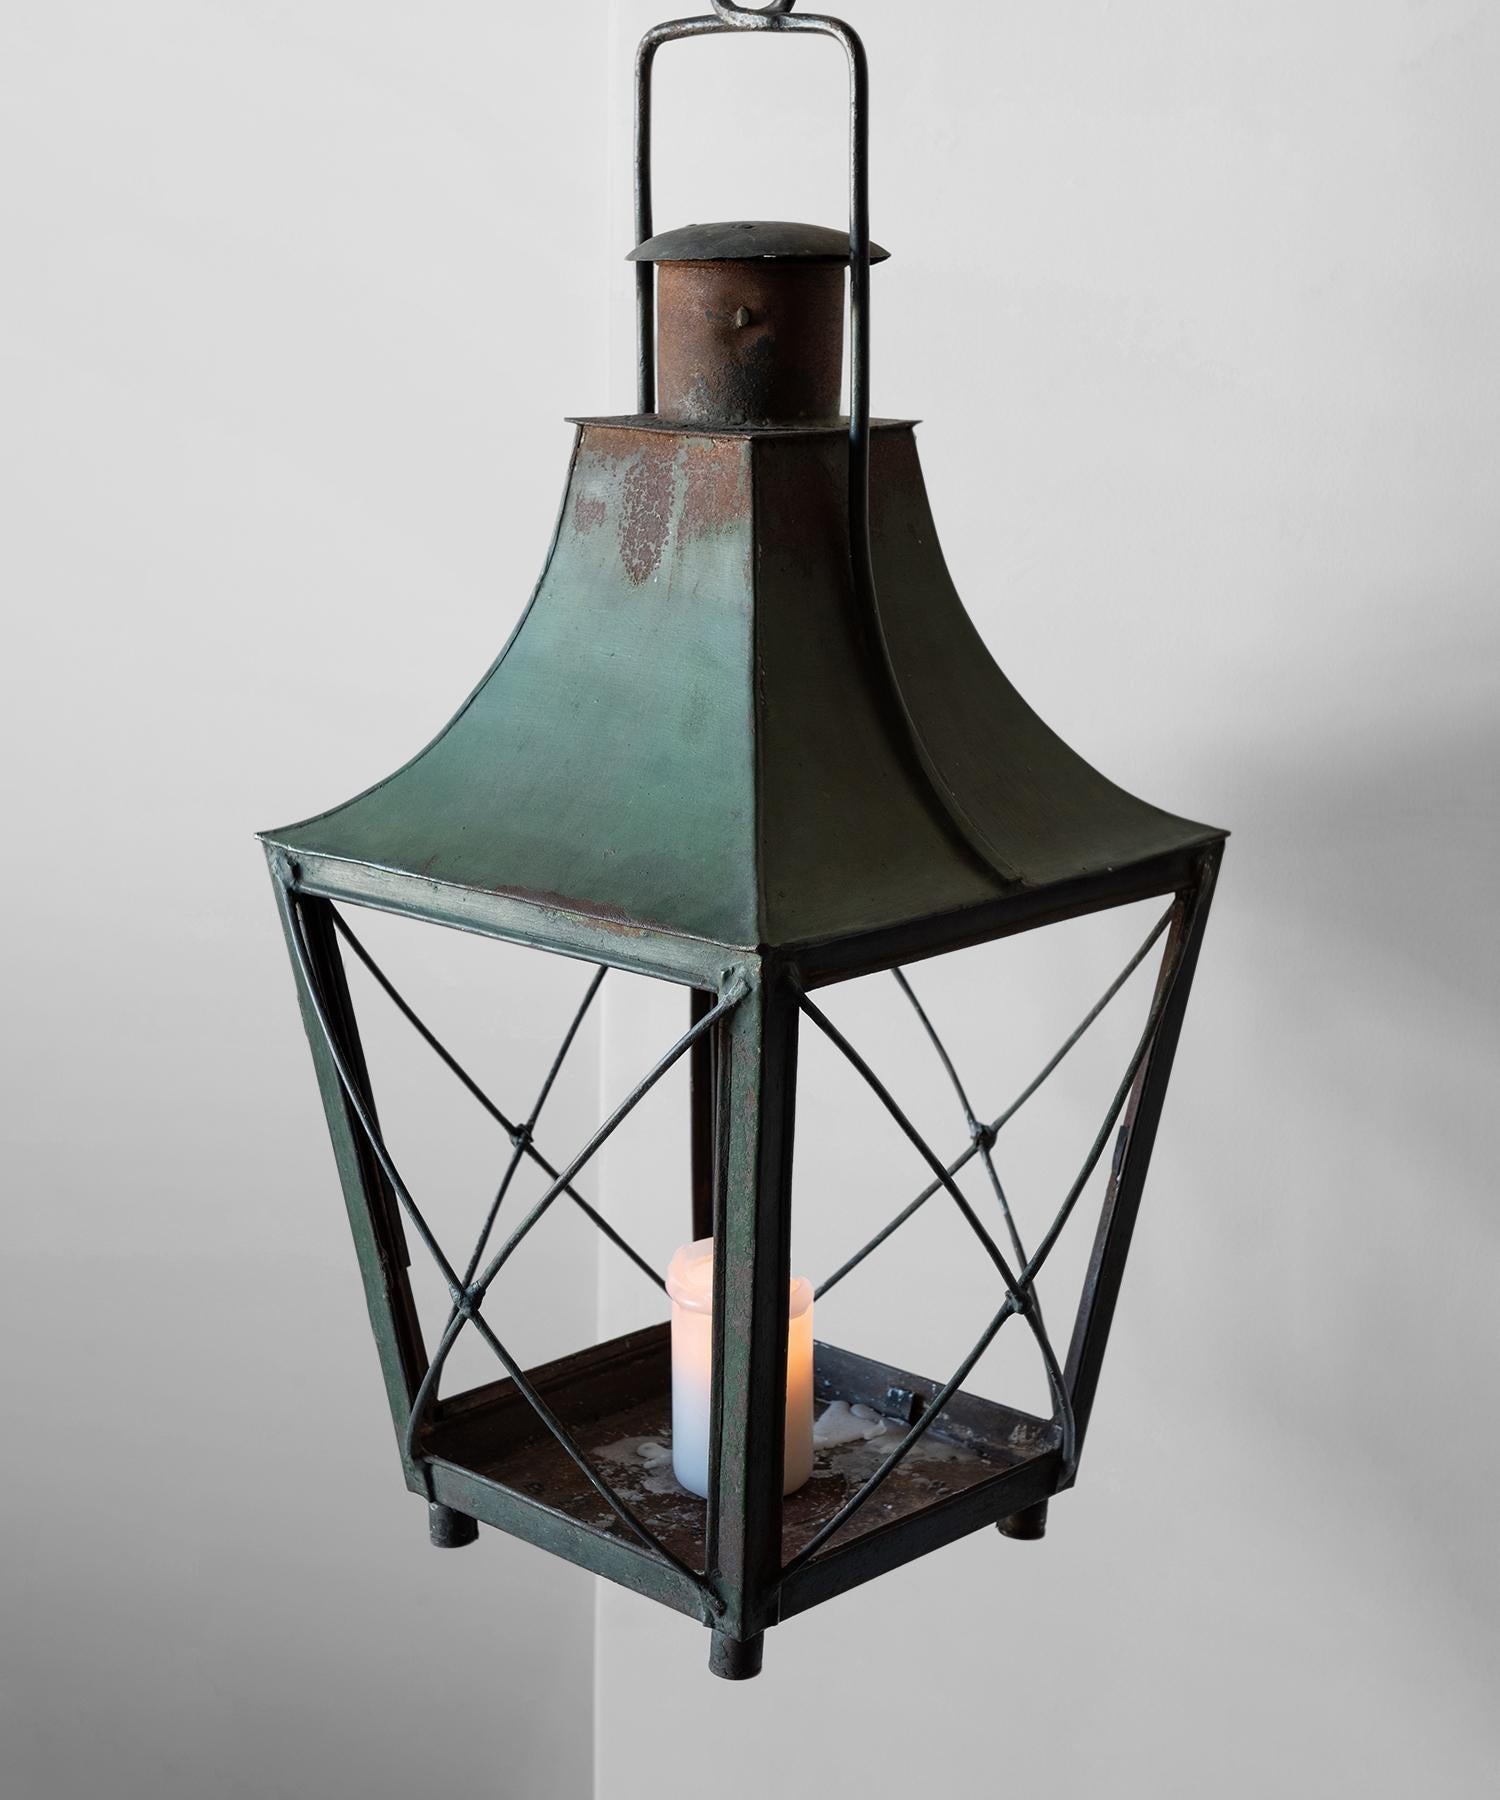 20th Century Copper Garden Lantern, France circa 1900